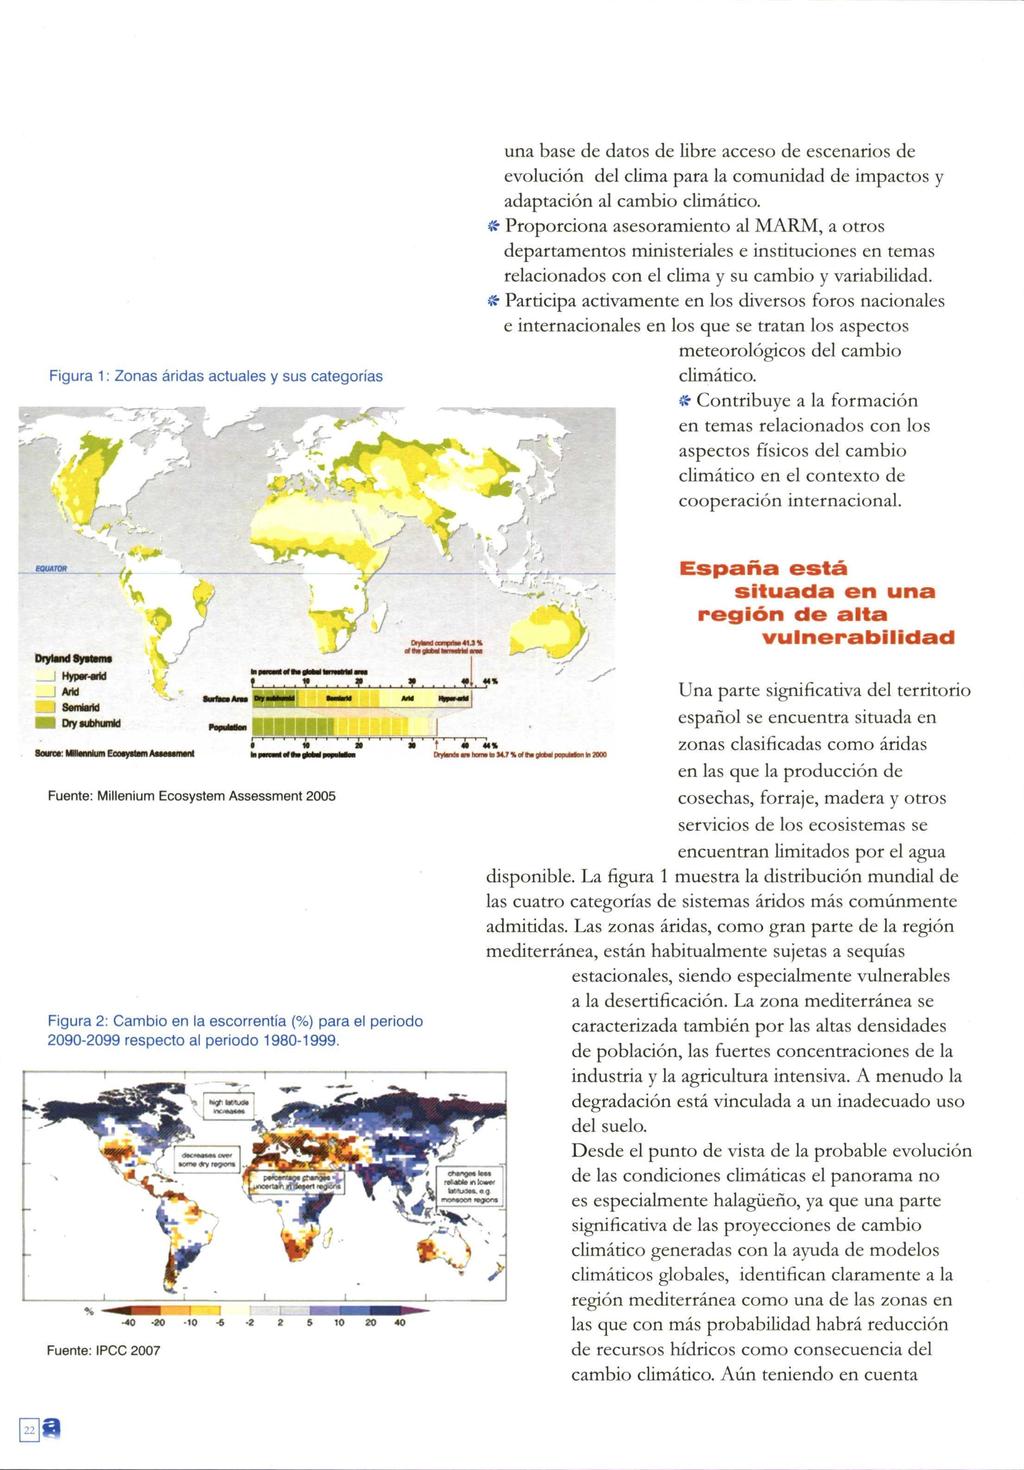 Figura 1: Zonas áridas actuales y sus categorías una base de datos de libre acceso de escenarios de evolución del clima para la comunidad de impactos y adaptación al cambio climático.